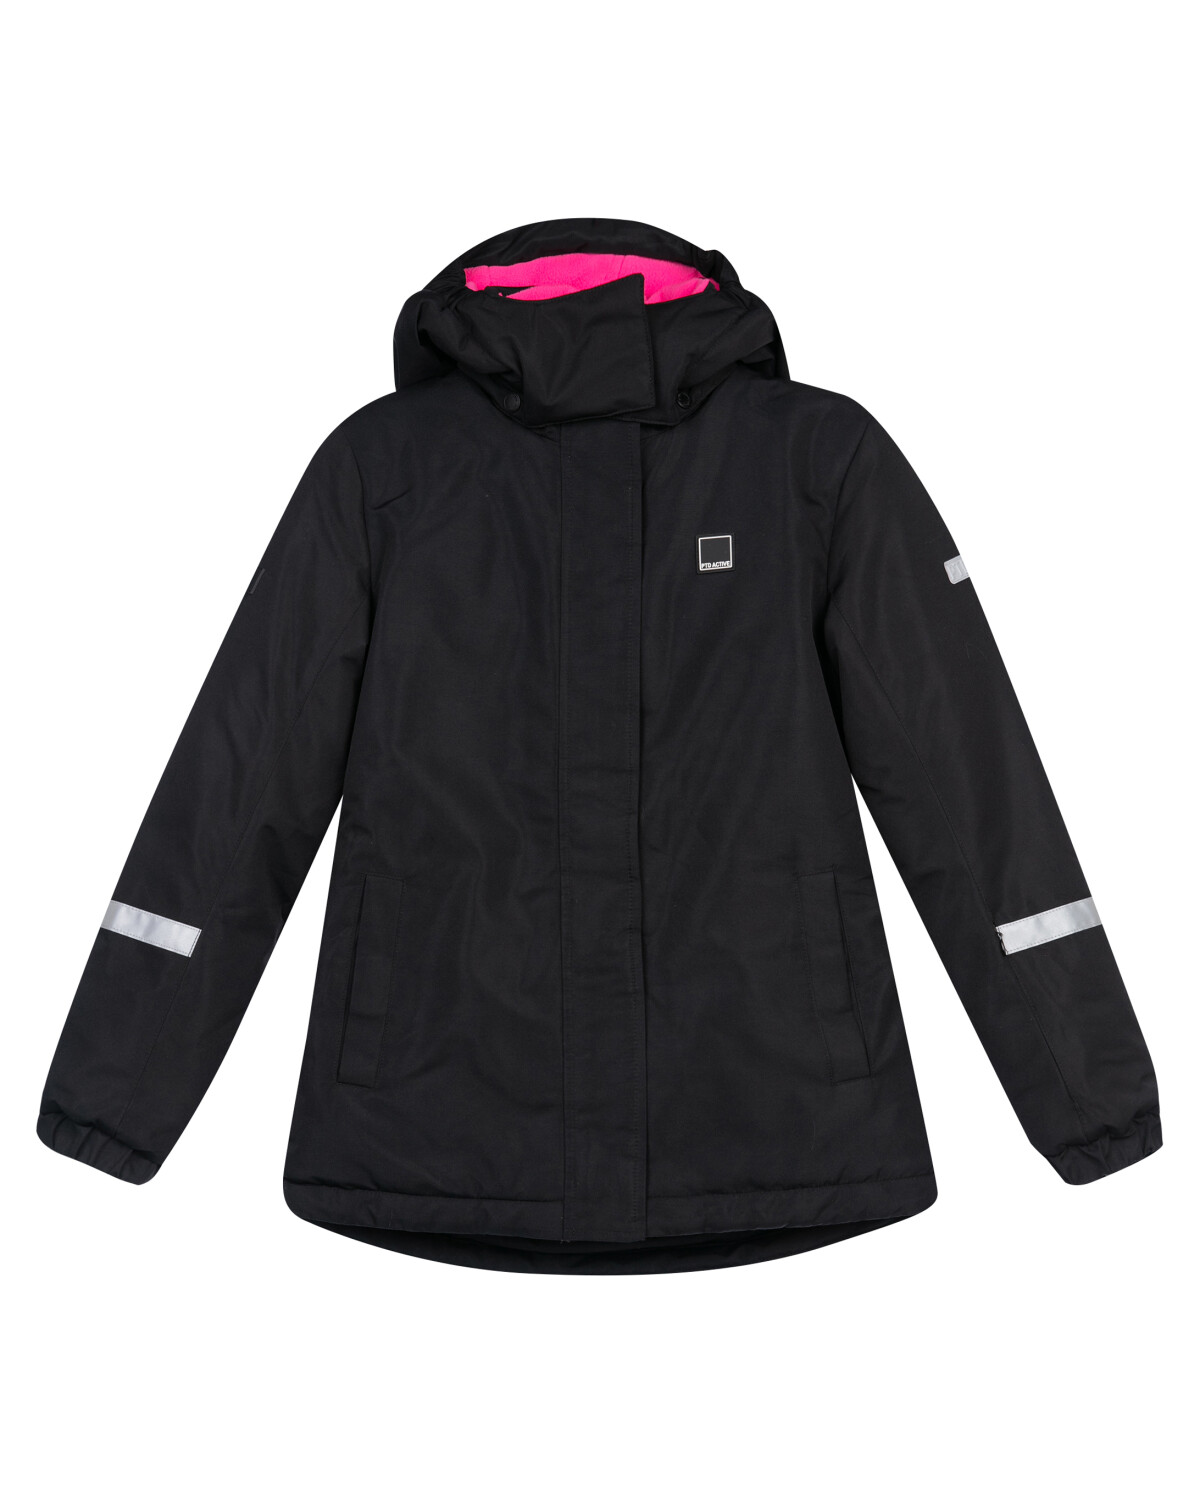 Куртка текстильная с полиуретановым покрытием для девочек PlayToday, черный,фуксия, 134